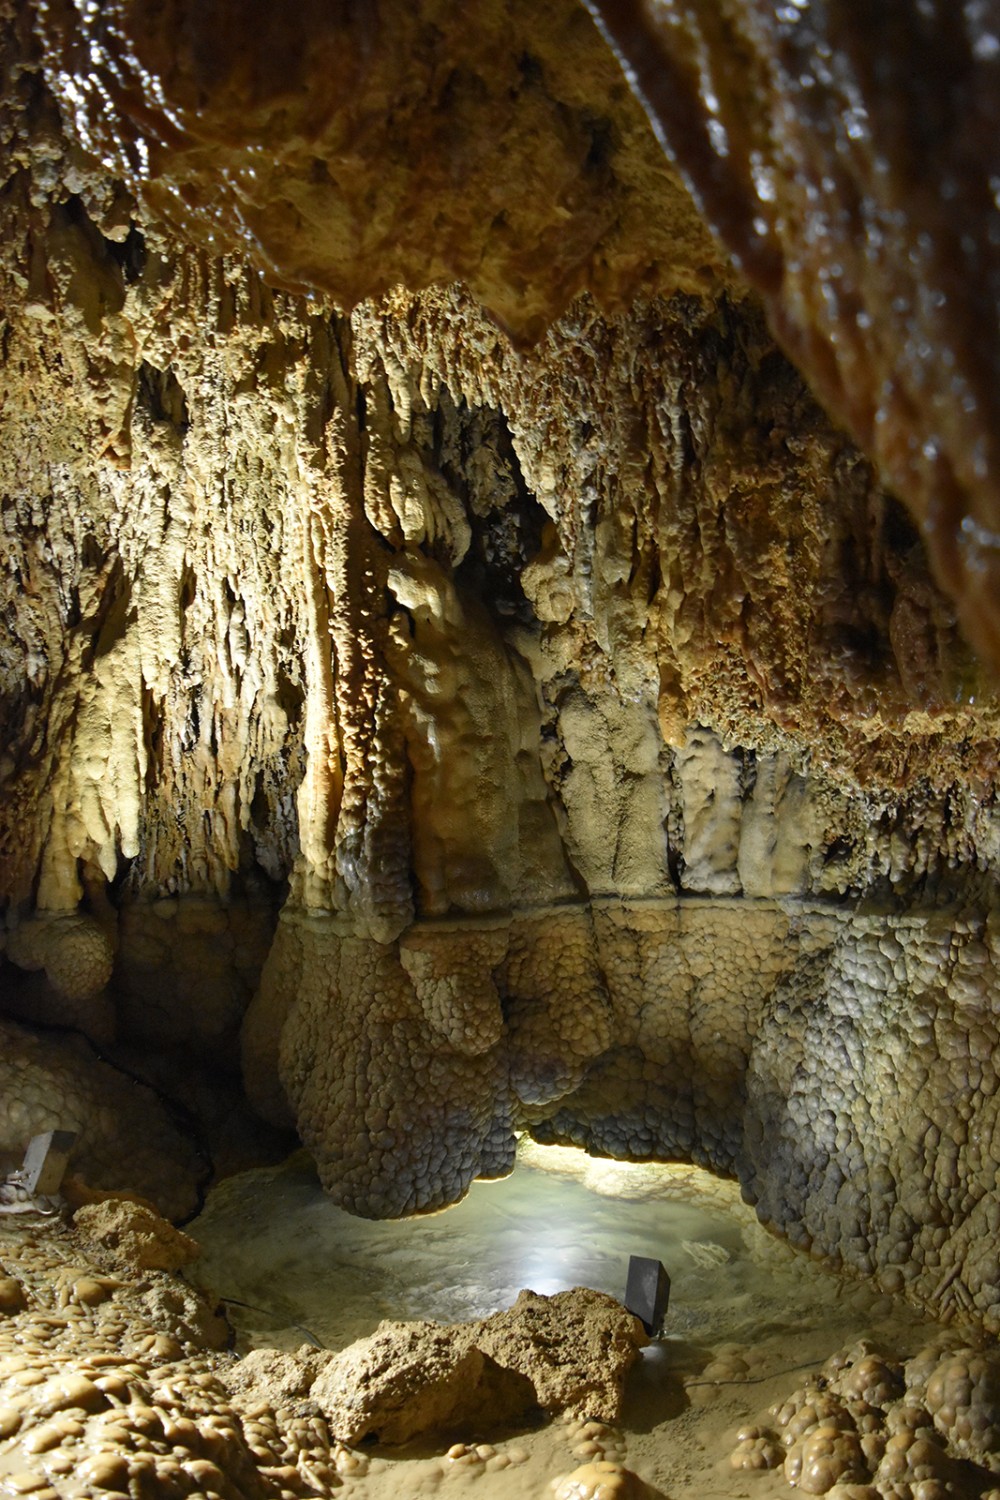 Die einzigartig schönen Tropfsteinhöhlen sind eine Reise wert.
Bild: Nathalie Stöckli